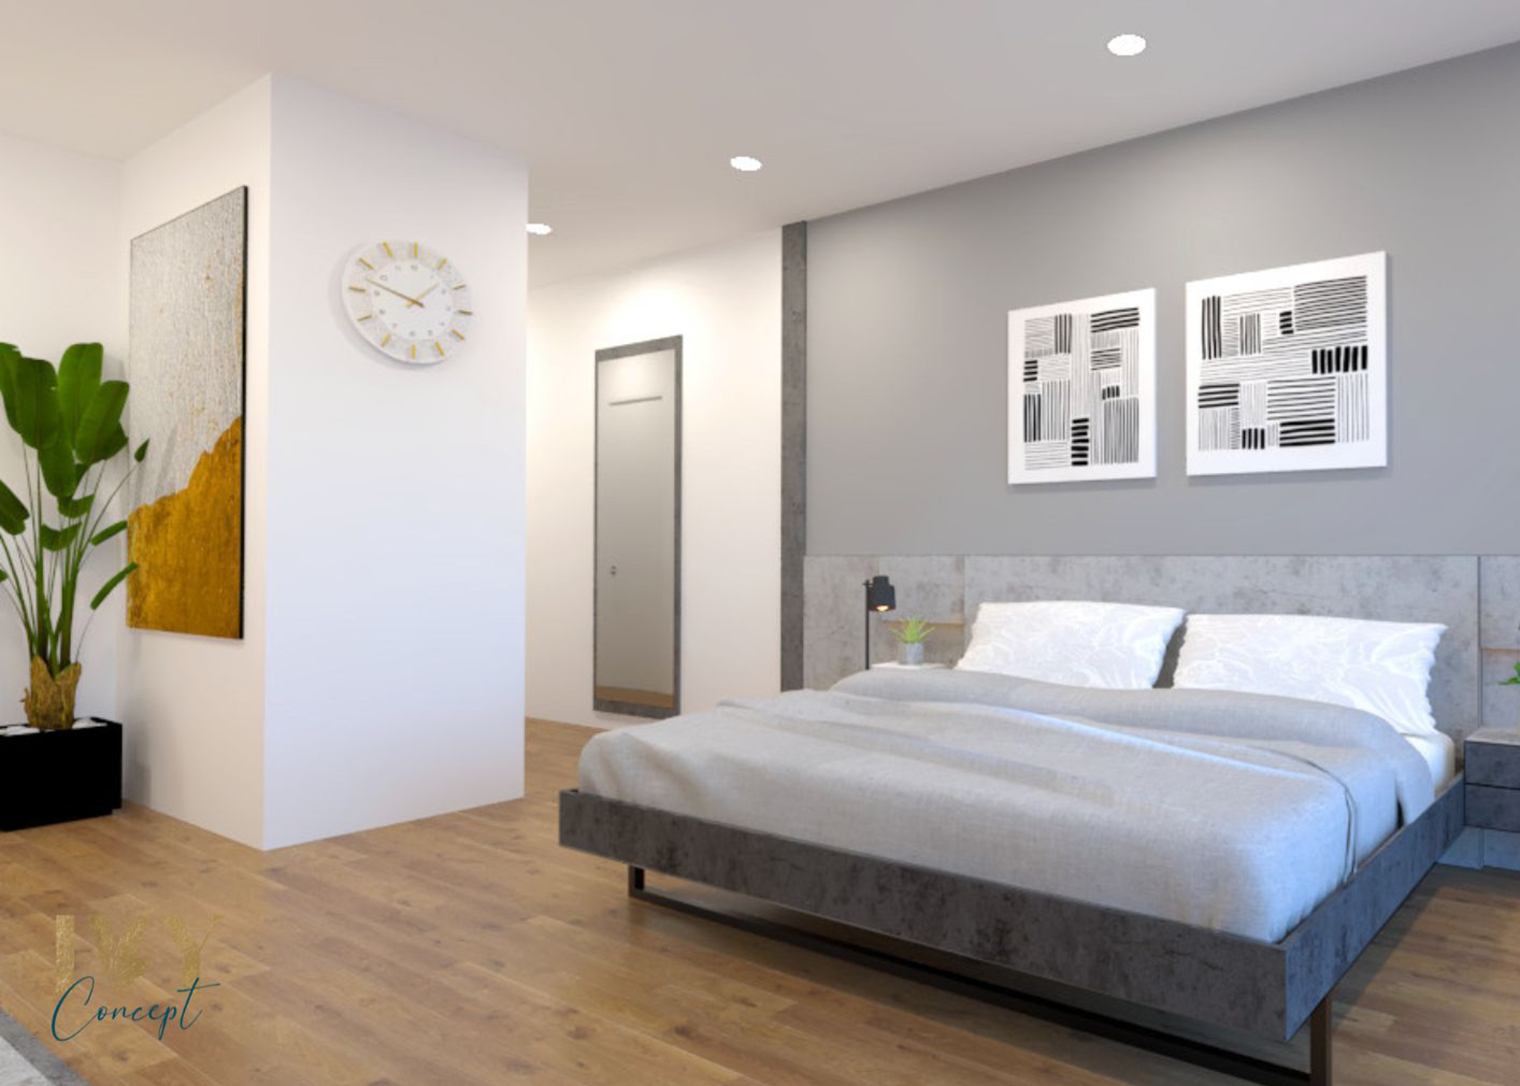 Phòng ngủ, phong cách Tối giản Minimalist, thiết kế concept nội thất, căn hộ PetroVietnam Landmark